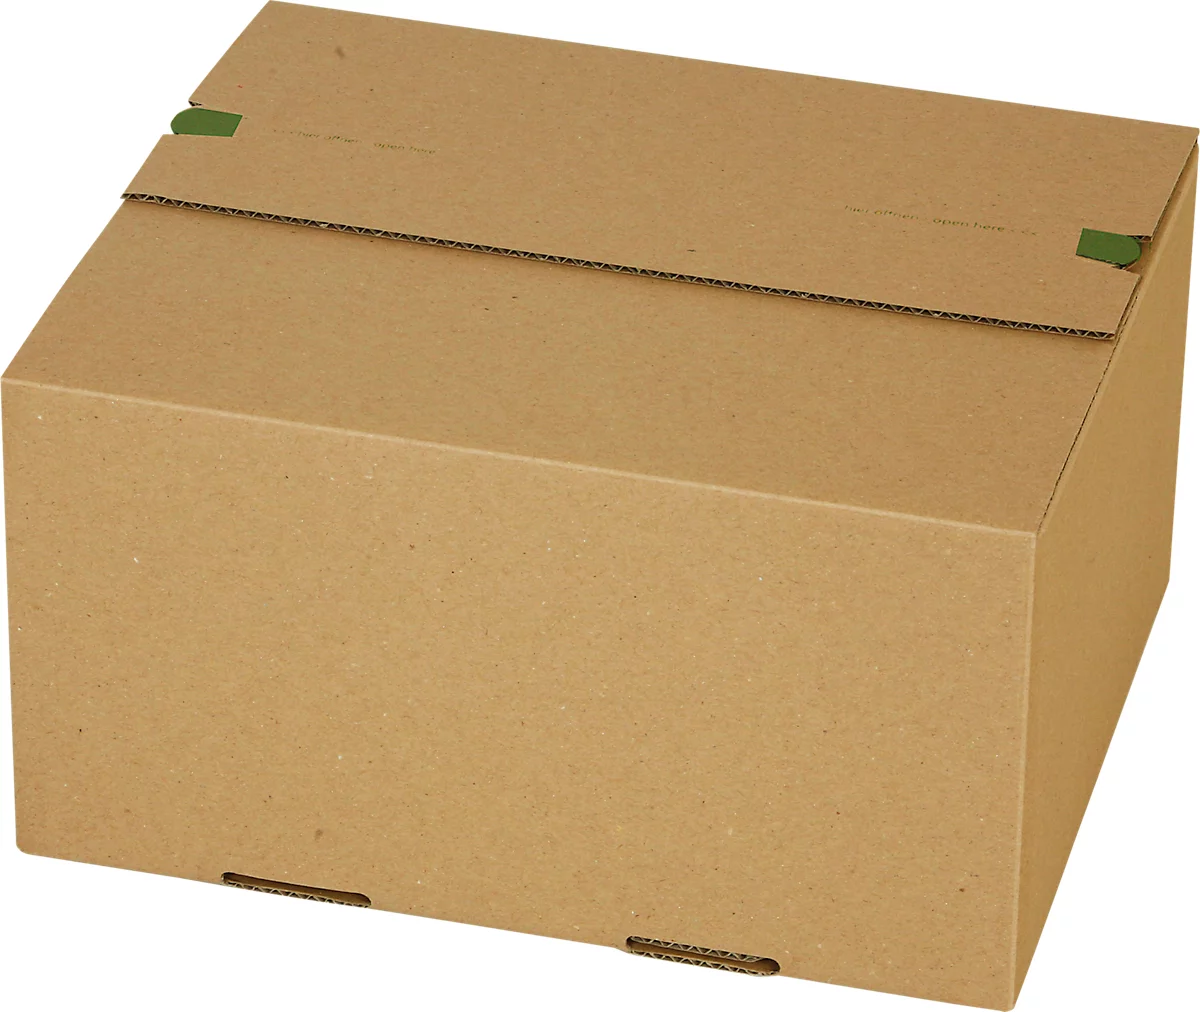 Versandkartons Grünmarie®, 265 x 225 x 140 mm, ideal für Päckchen Größe M, Automatikboden, bis 20 kg, 100 % recycelbar, FSC®-Wellpappe, braun, 25 St.